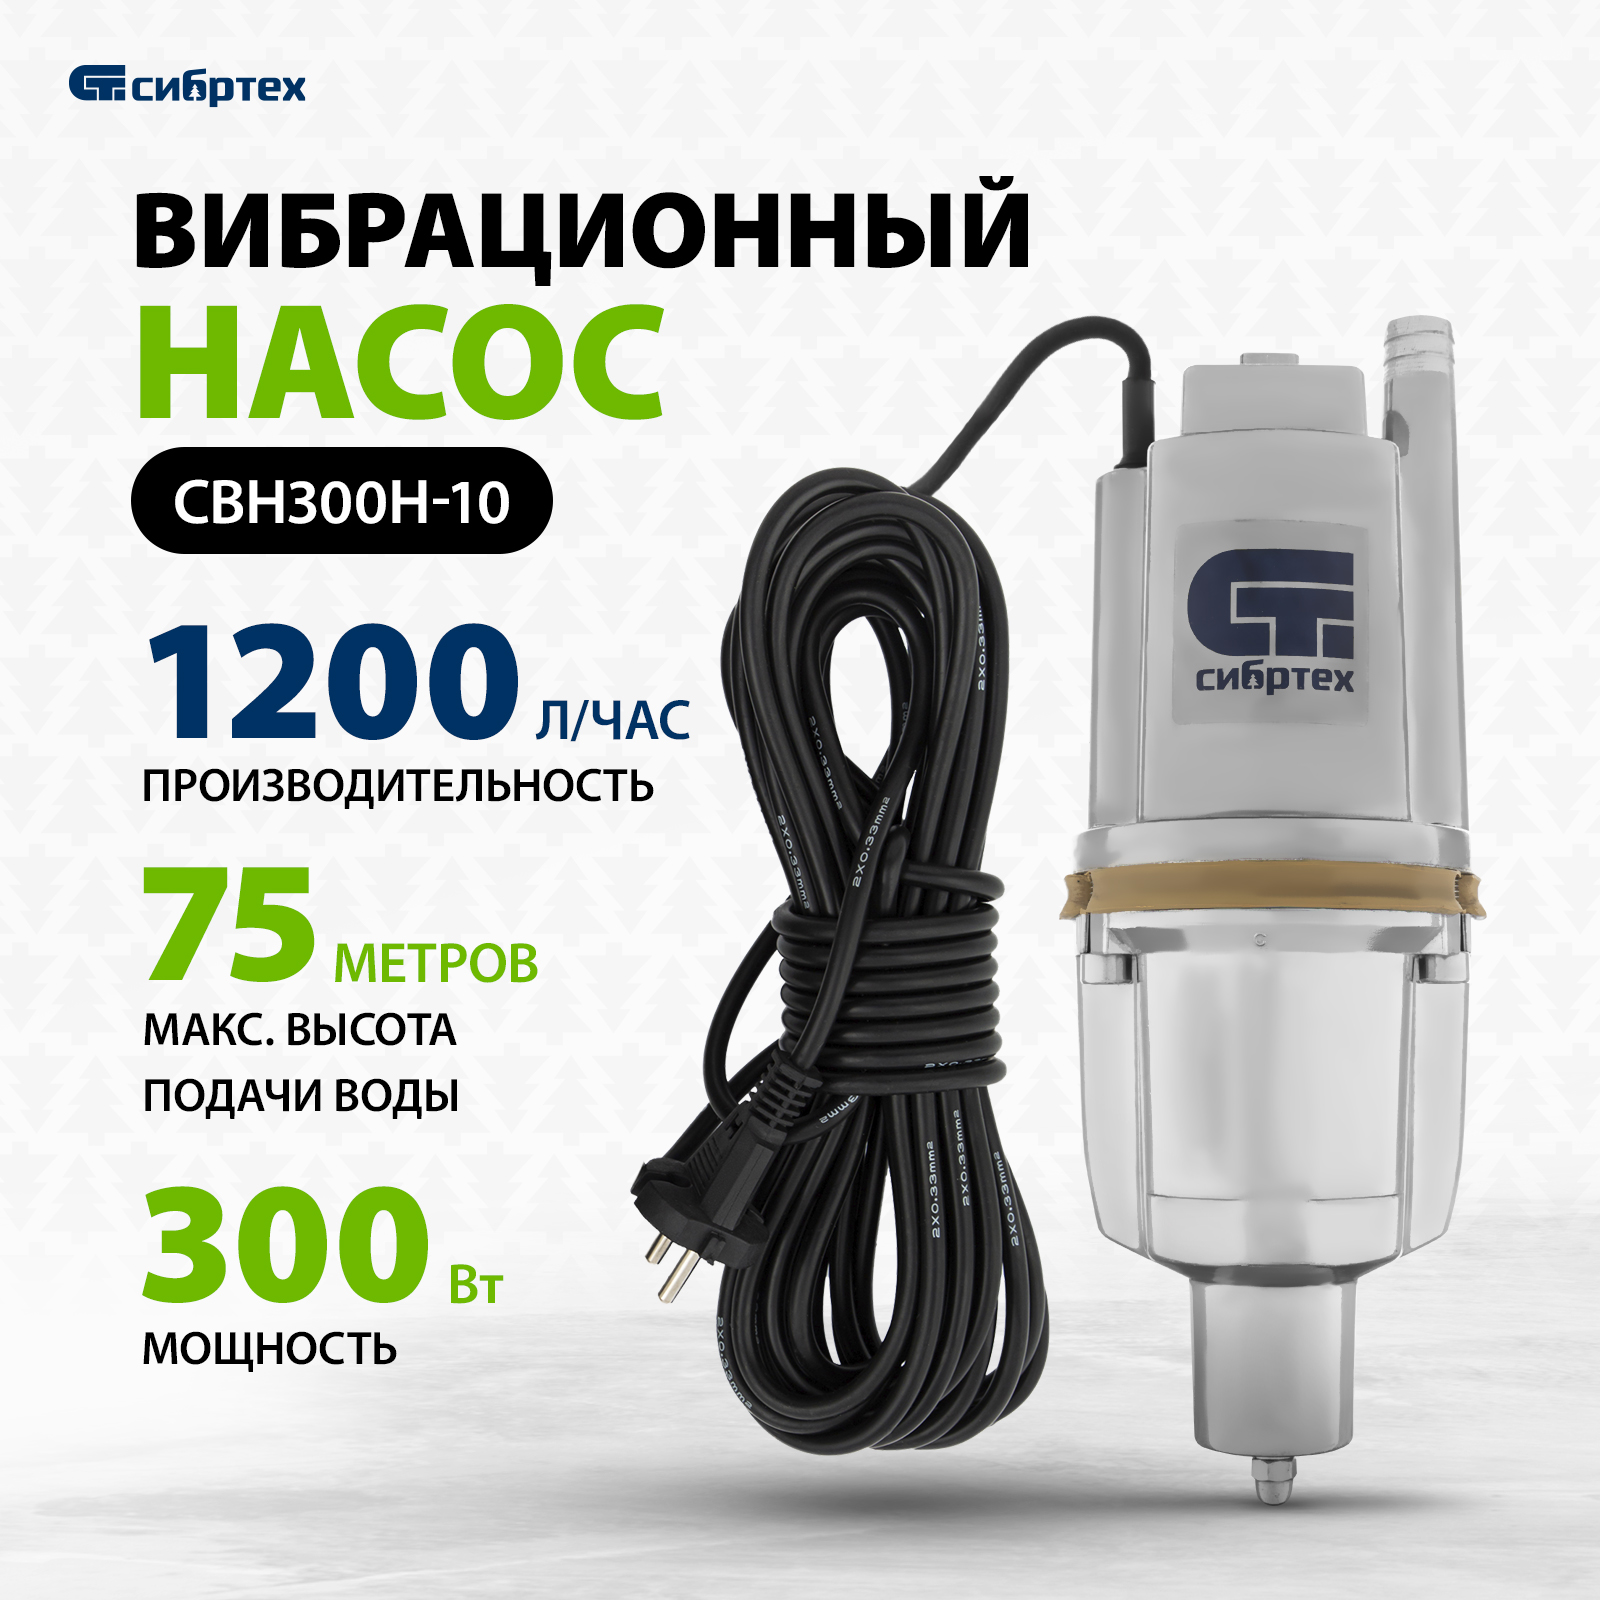 Скважинный насос СВН300Н-10 купить, цены в Москве на sbermegamarket.ru